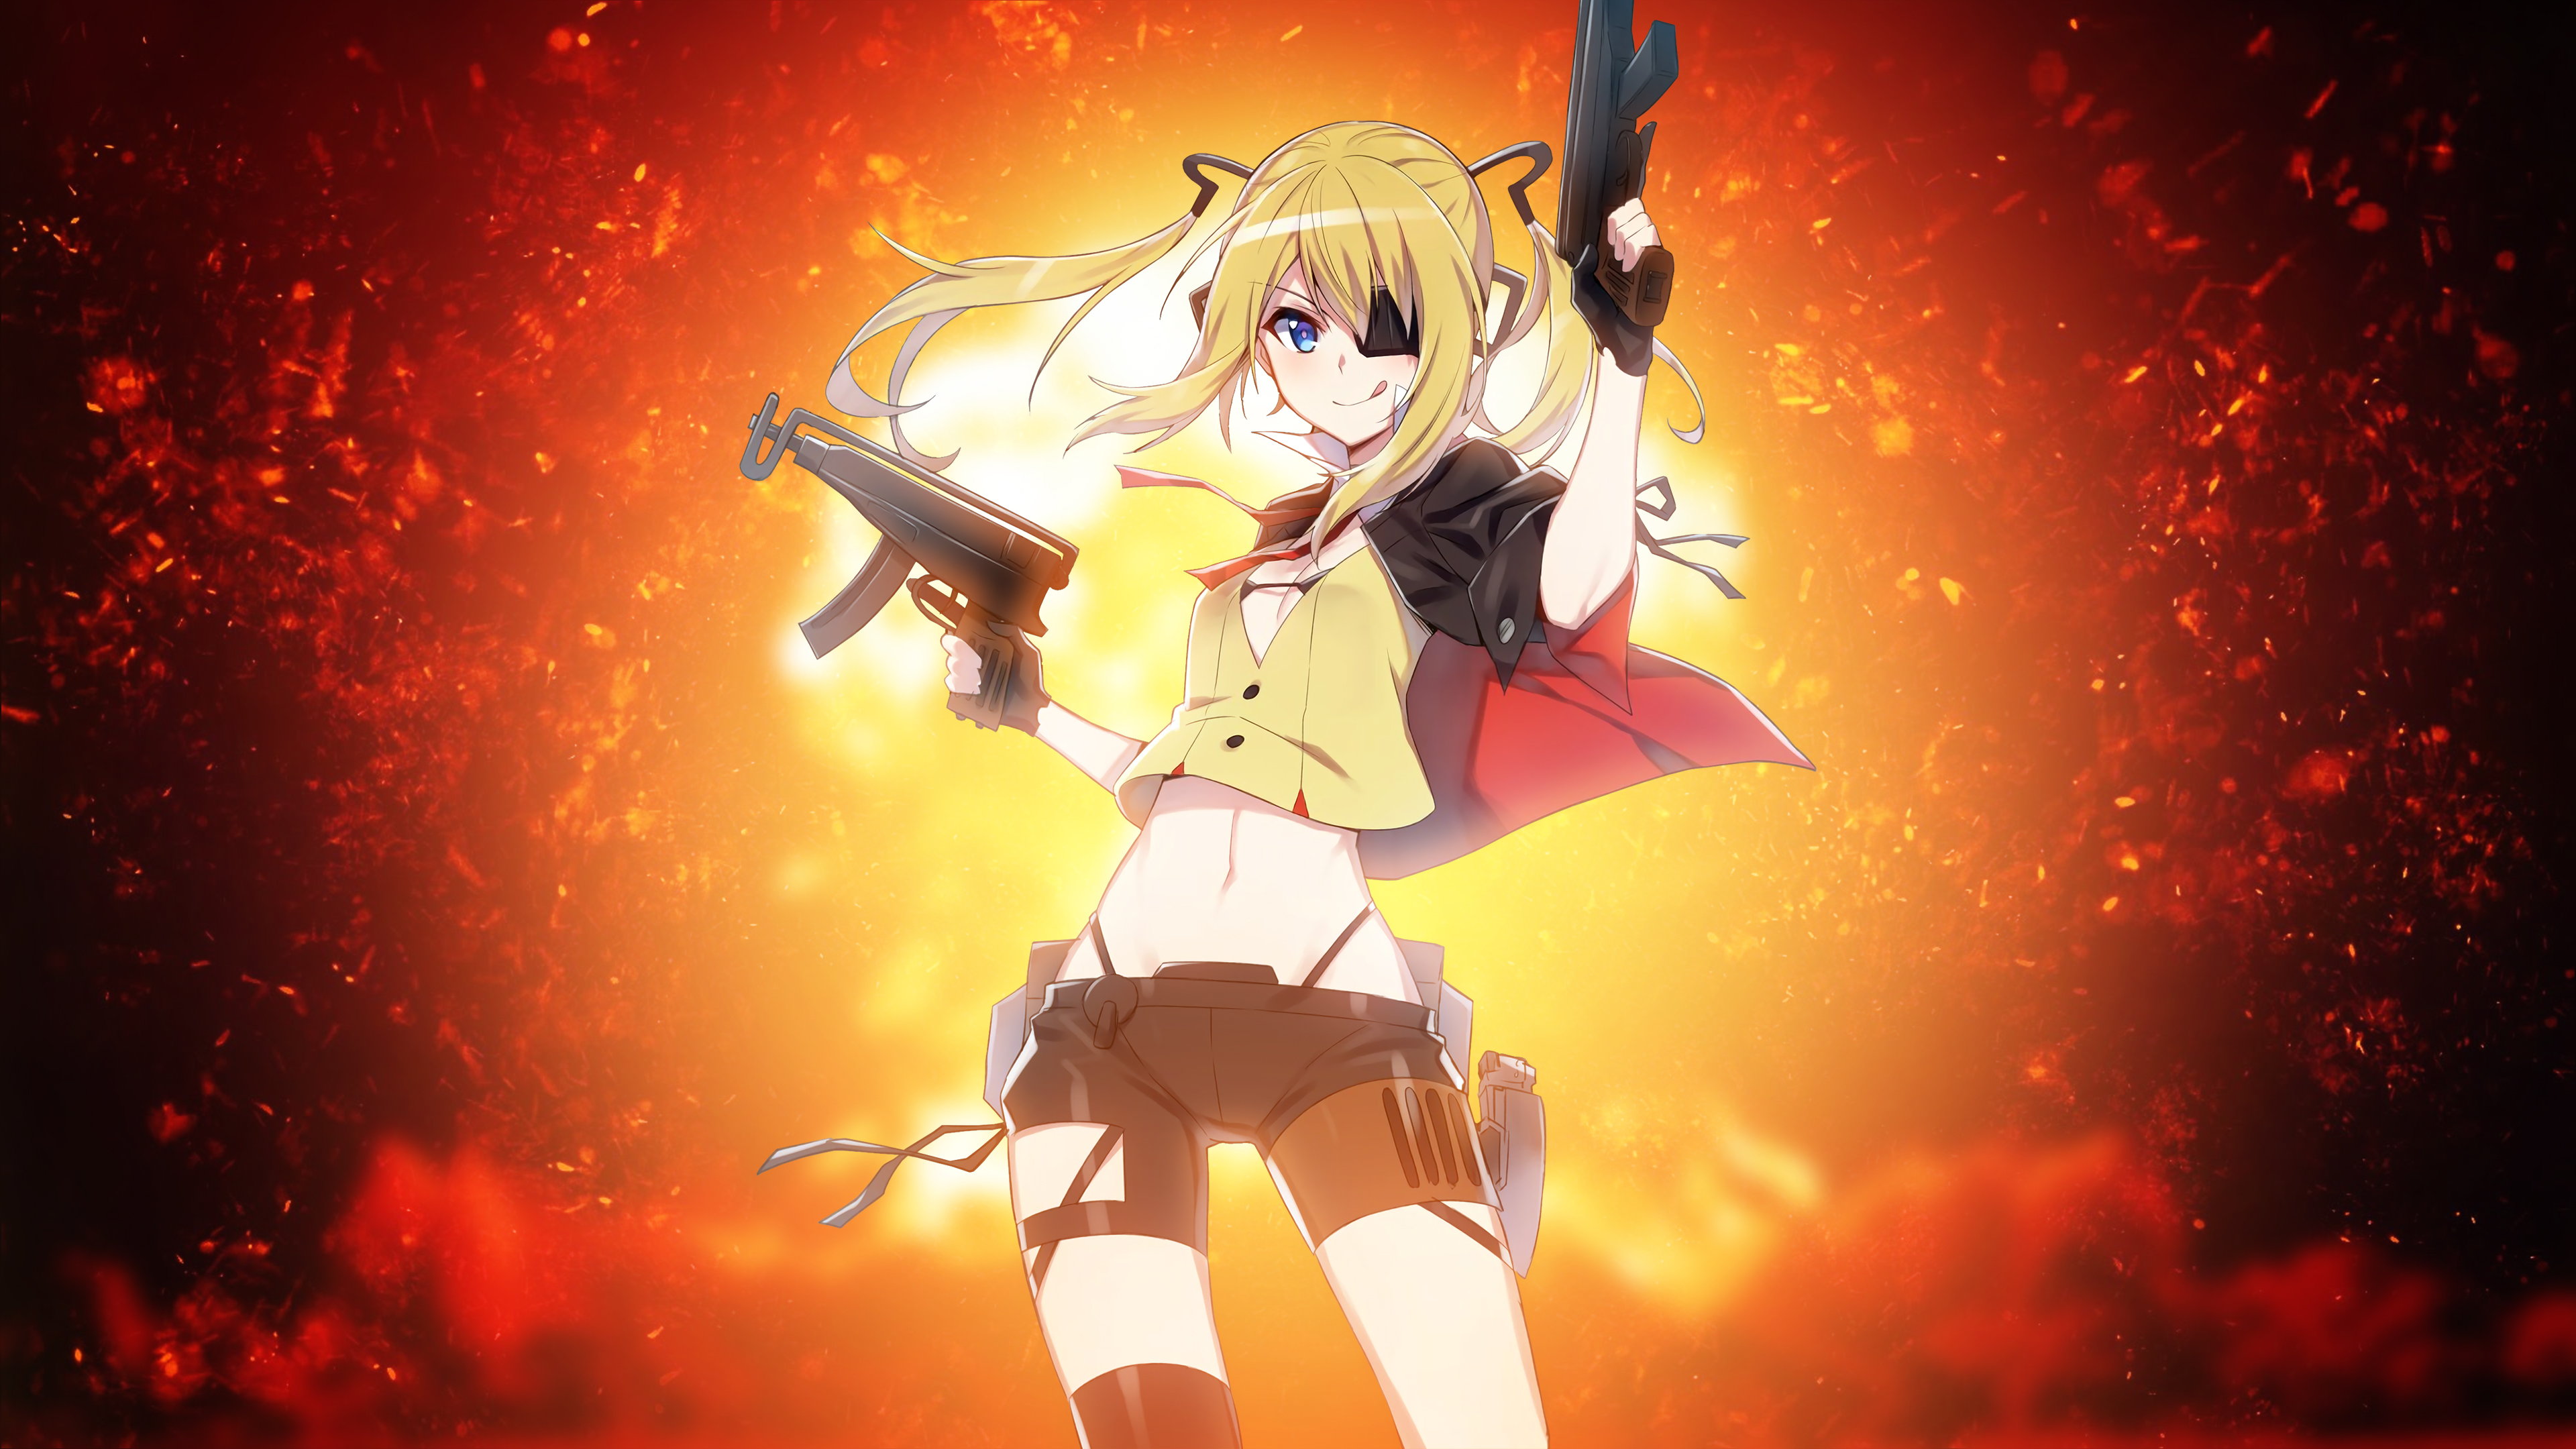 Anime girl Guns 4K5949418896 - Anime girl Guns 4K - Tadokoro, Guns, Girl, Anime